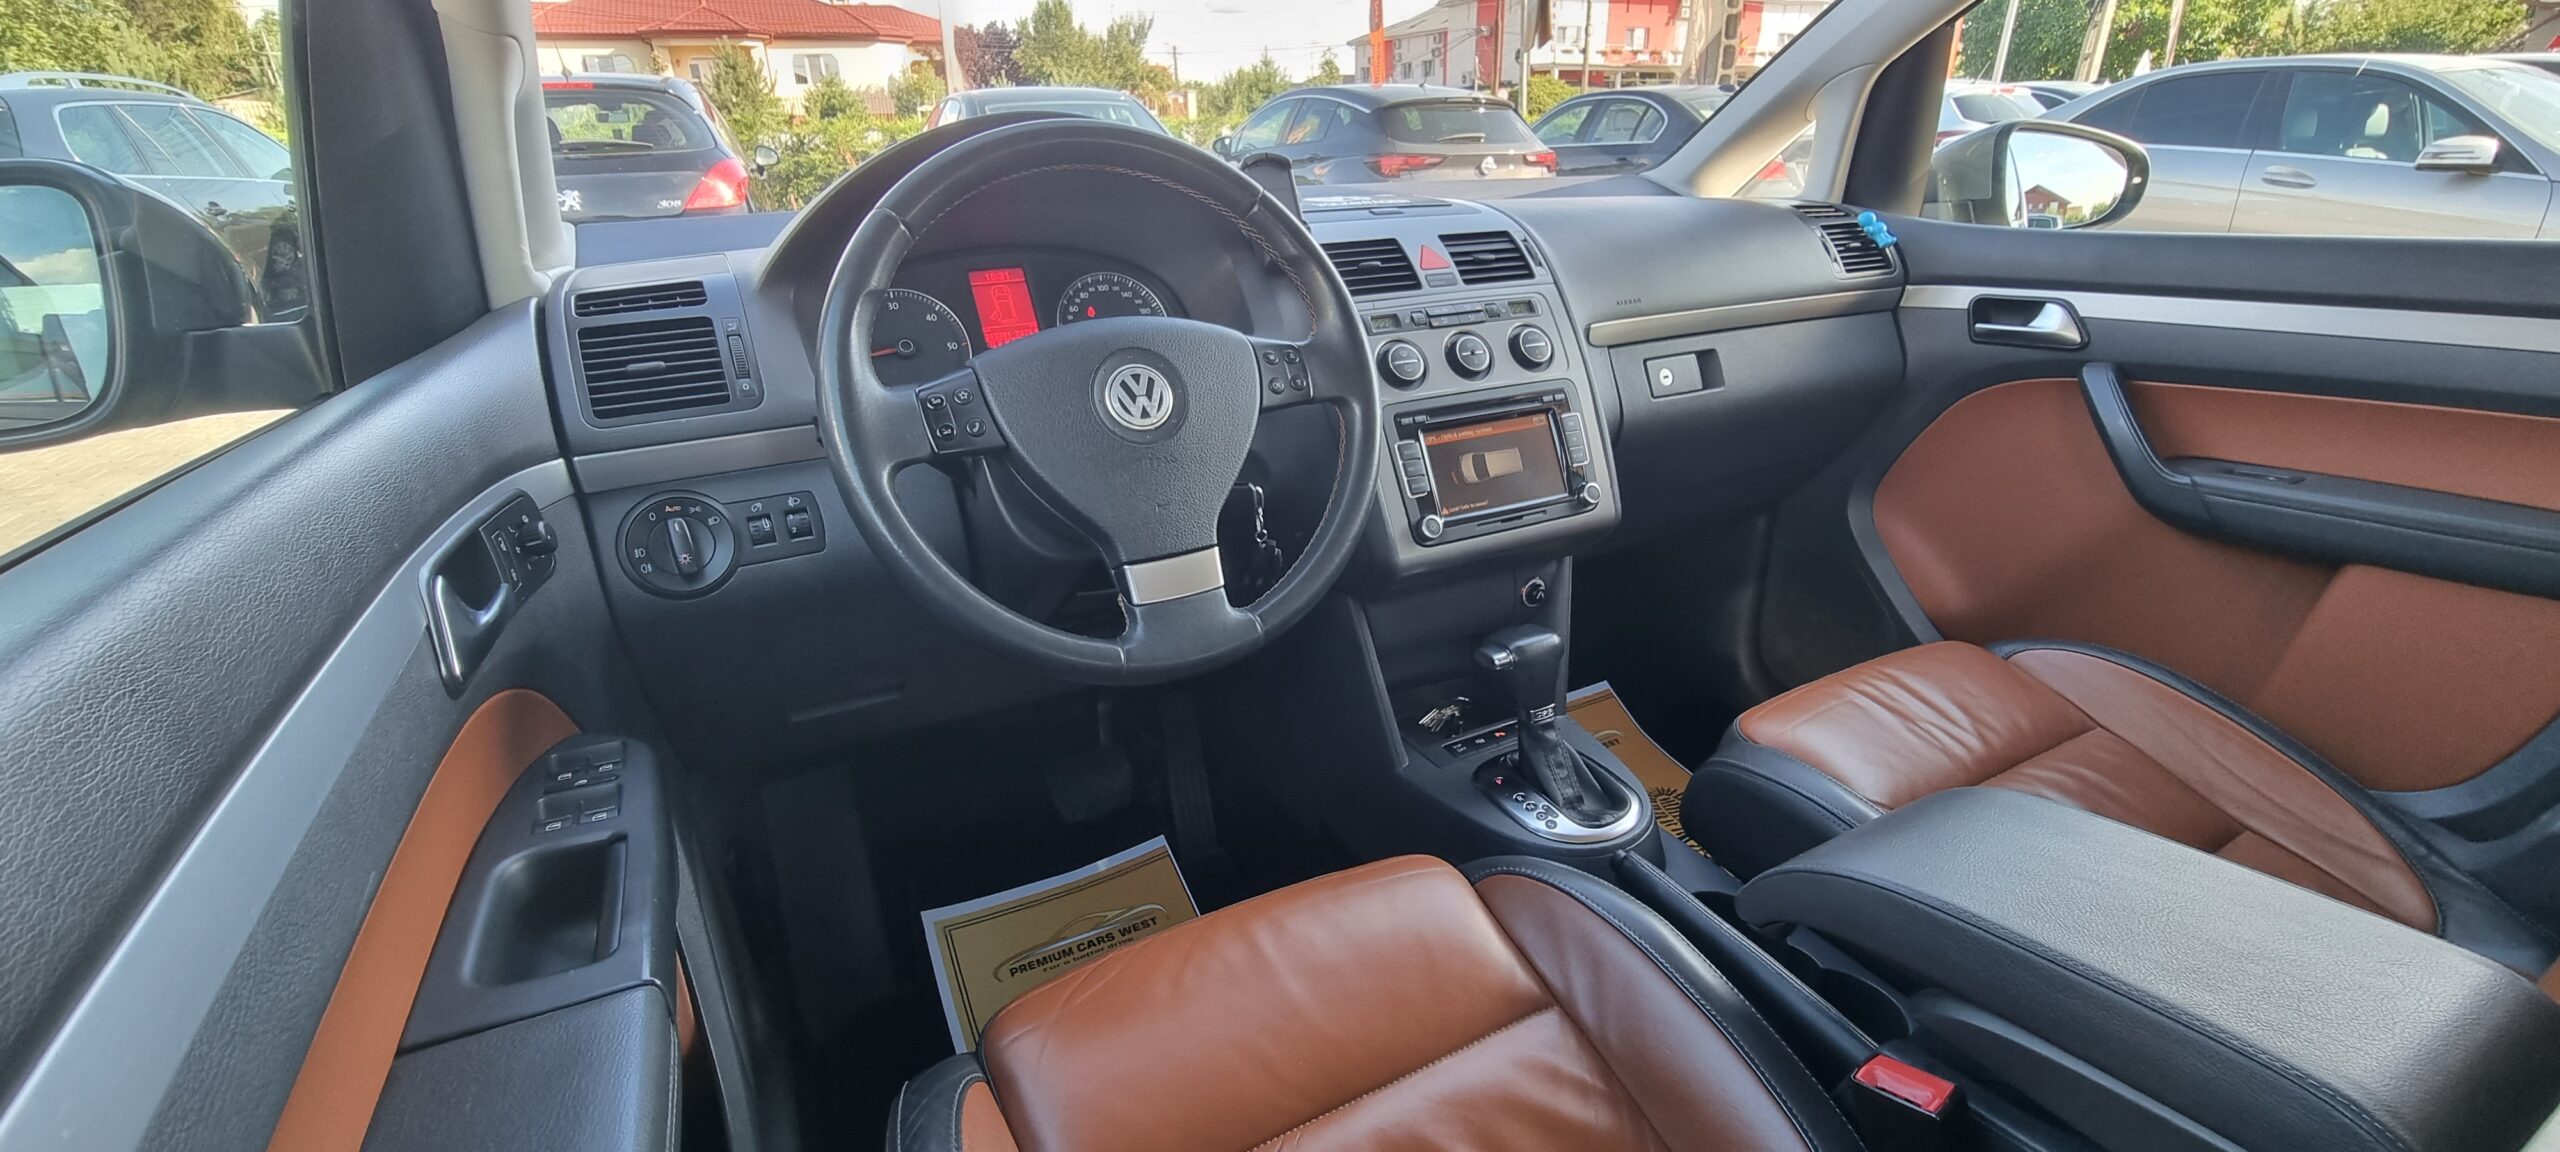 VW TOURAN 2.0 TDI